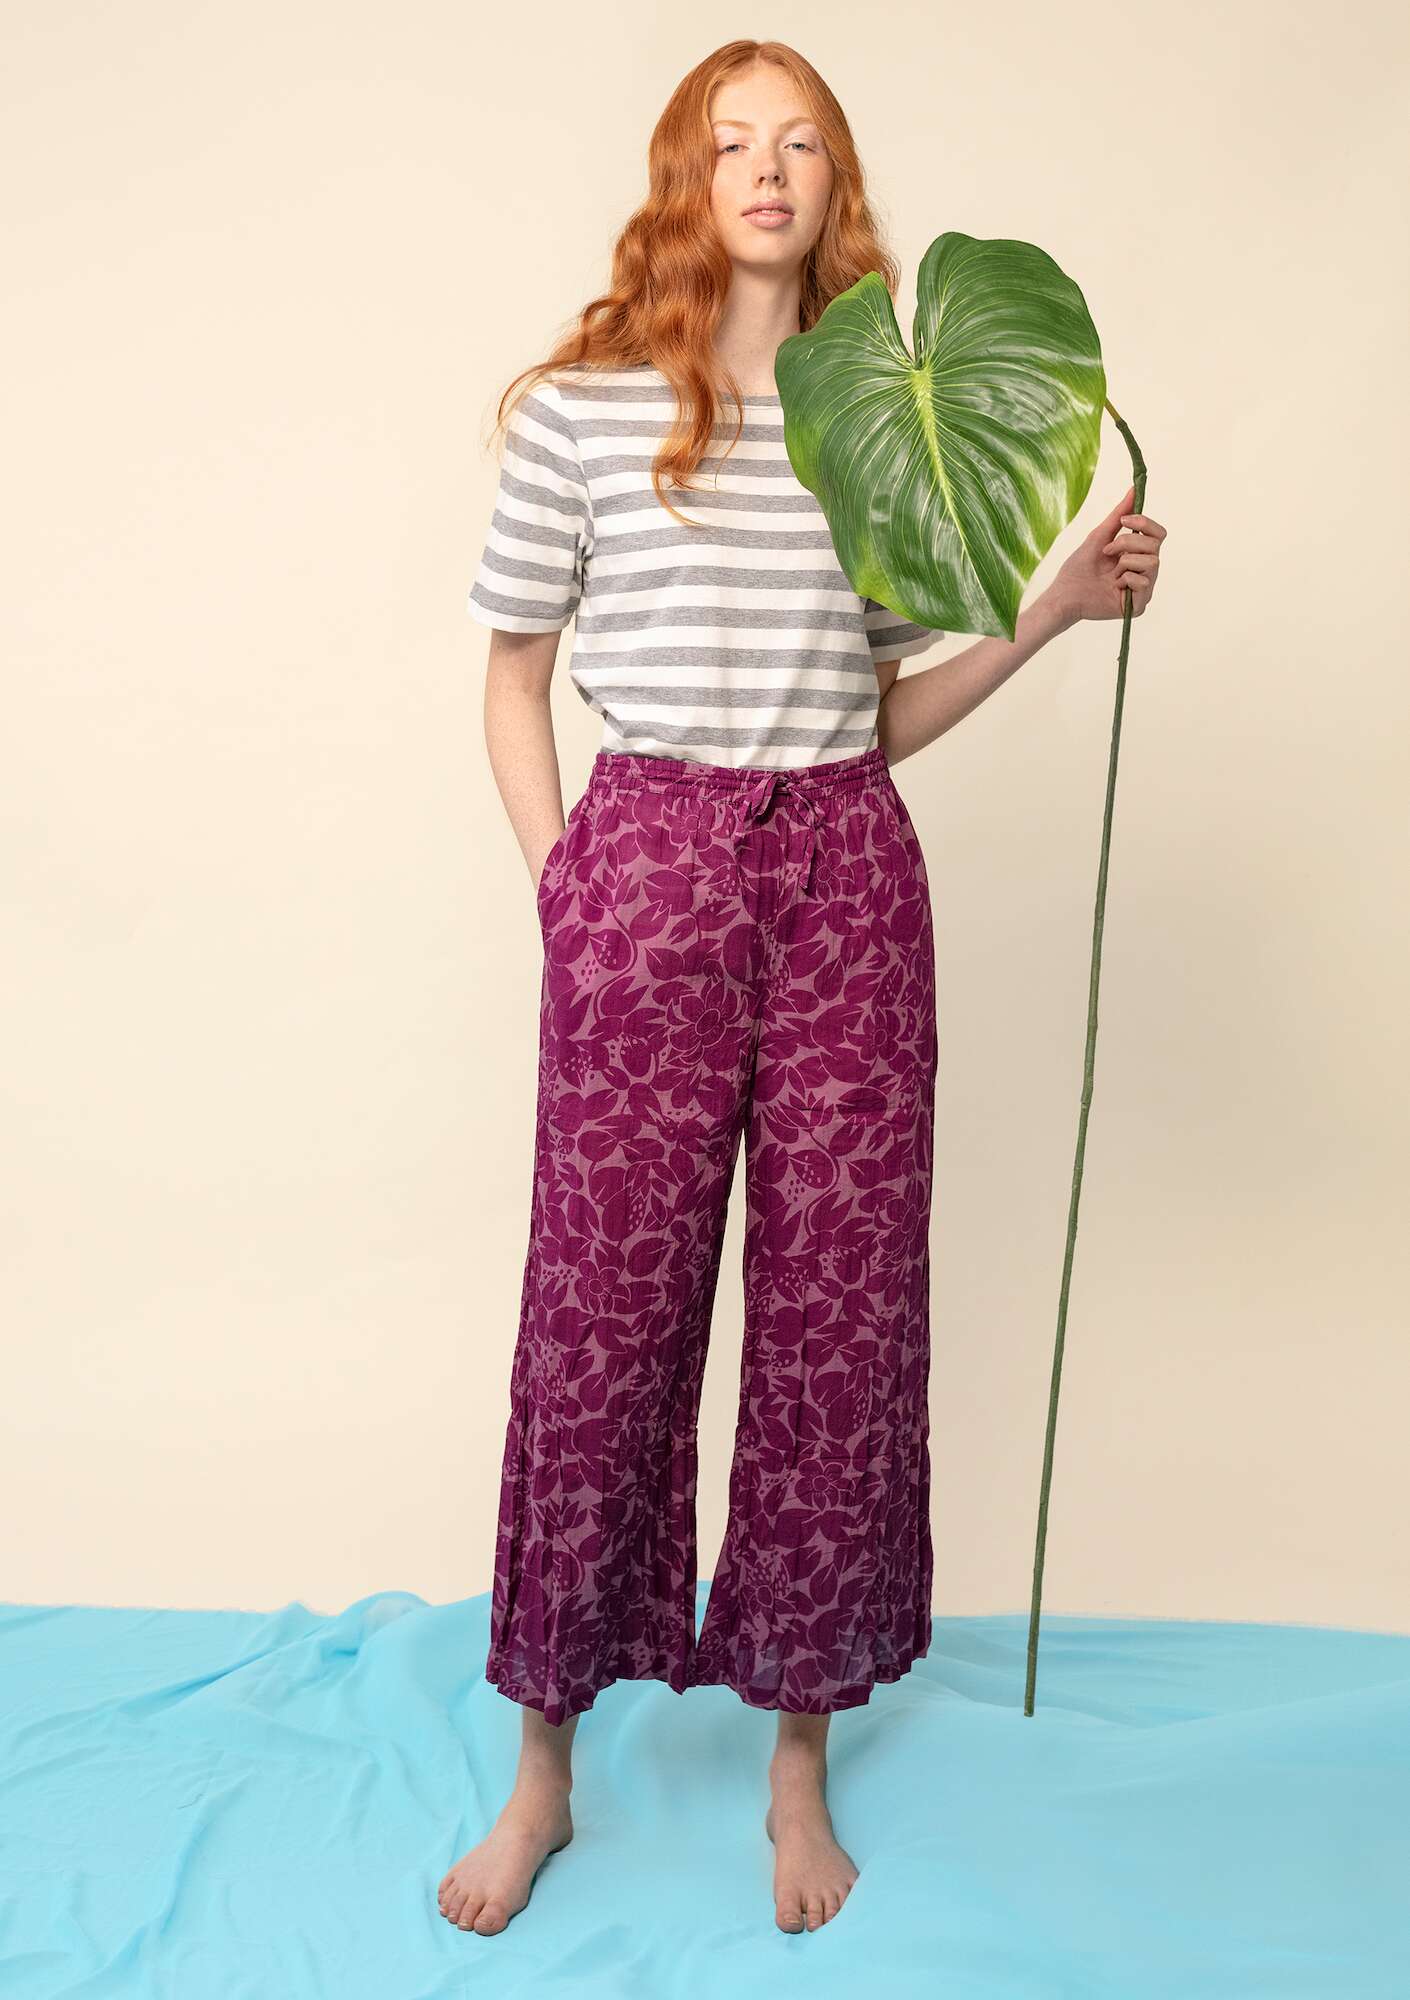 Pantalon Lotus grape/patterned